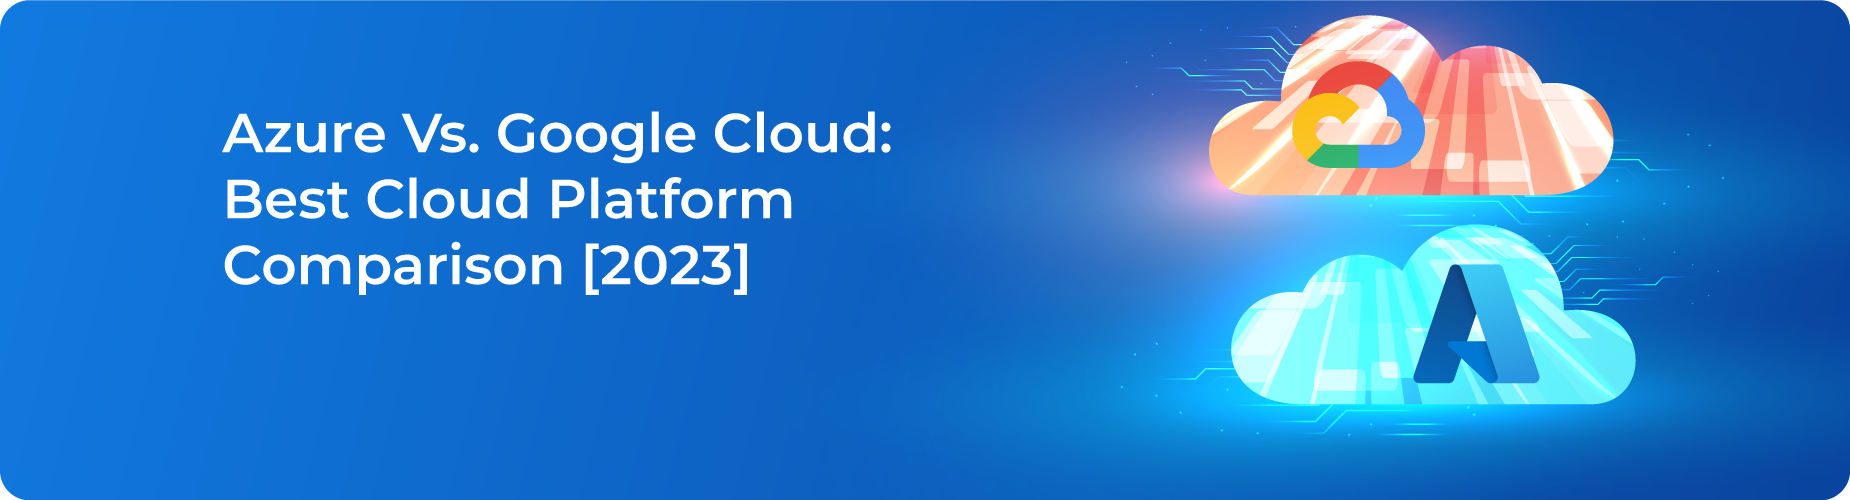 AWS Vs Azure cloud computing comparison